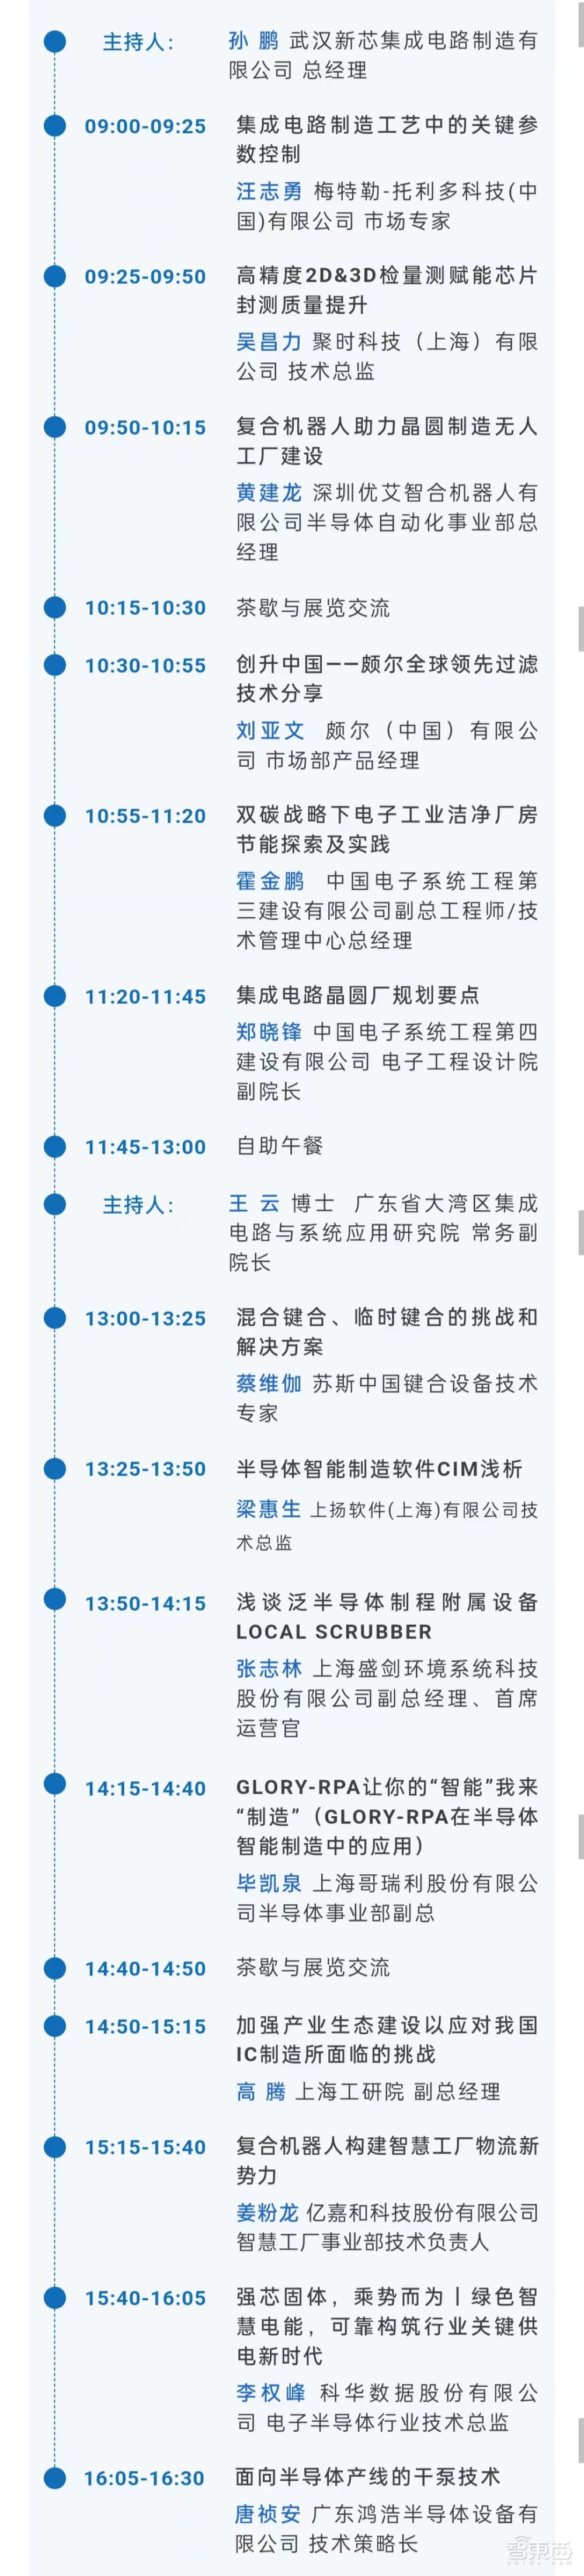 最新议程！集成电路制造年会将于4月17-19日在广州举办